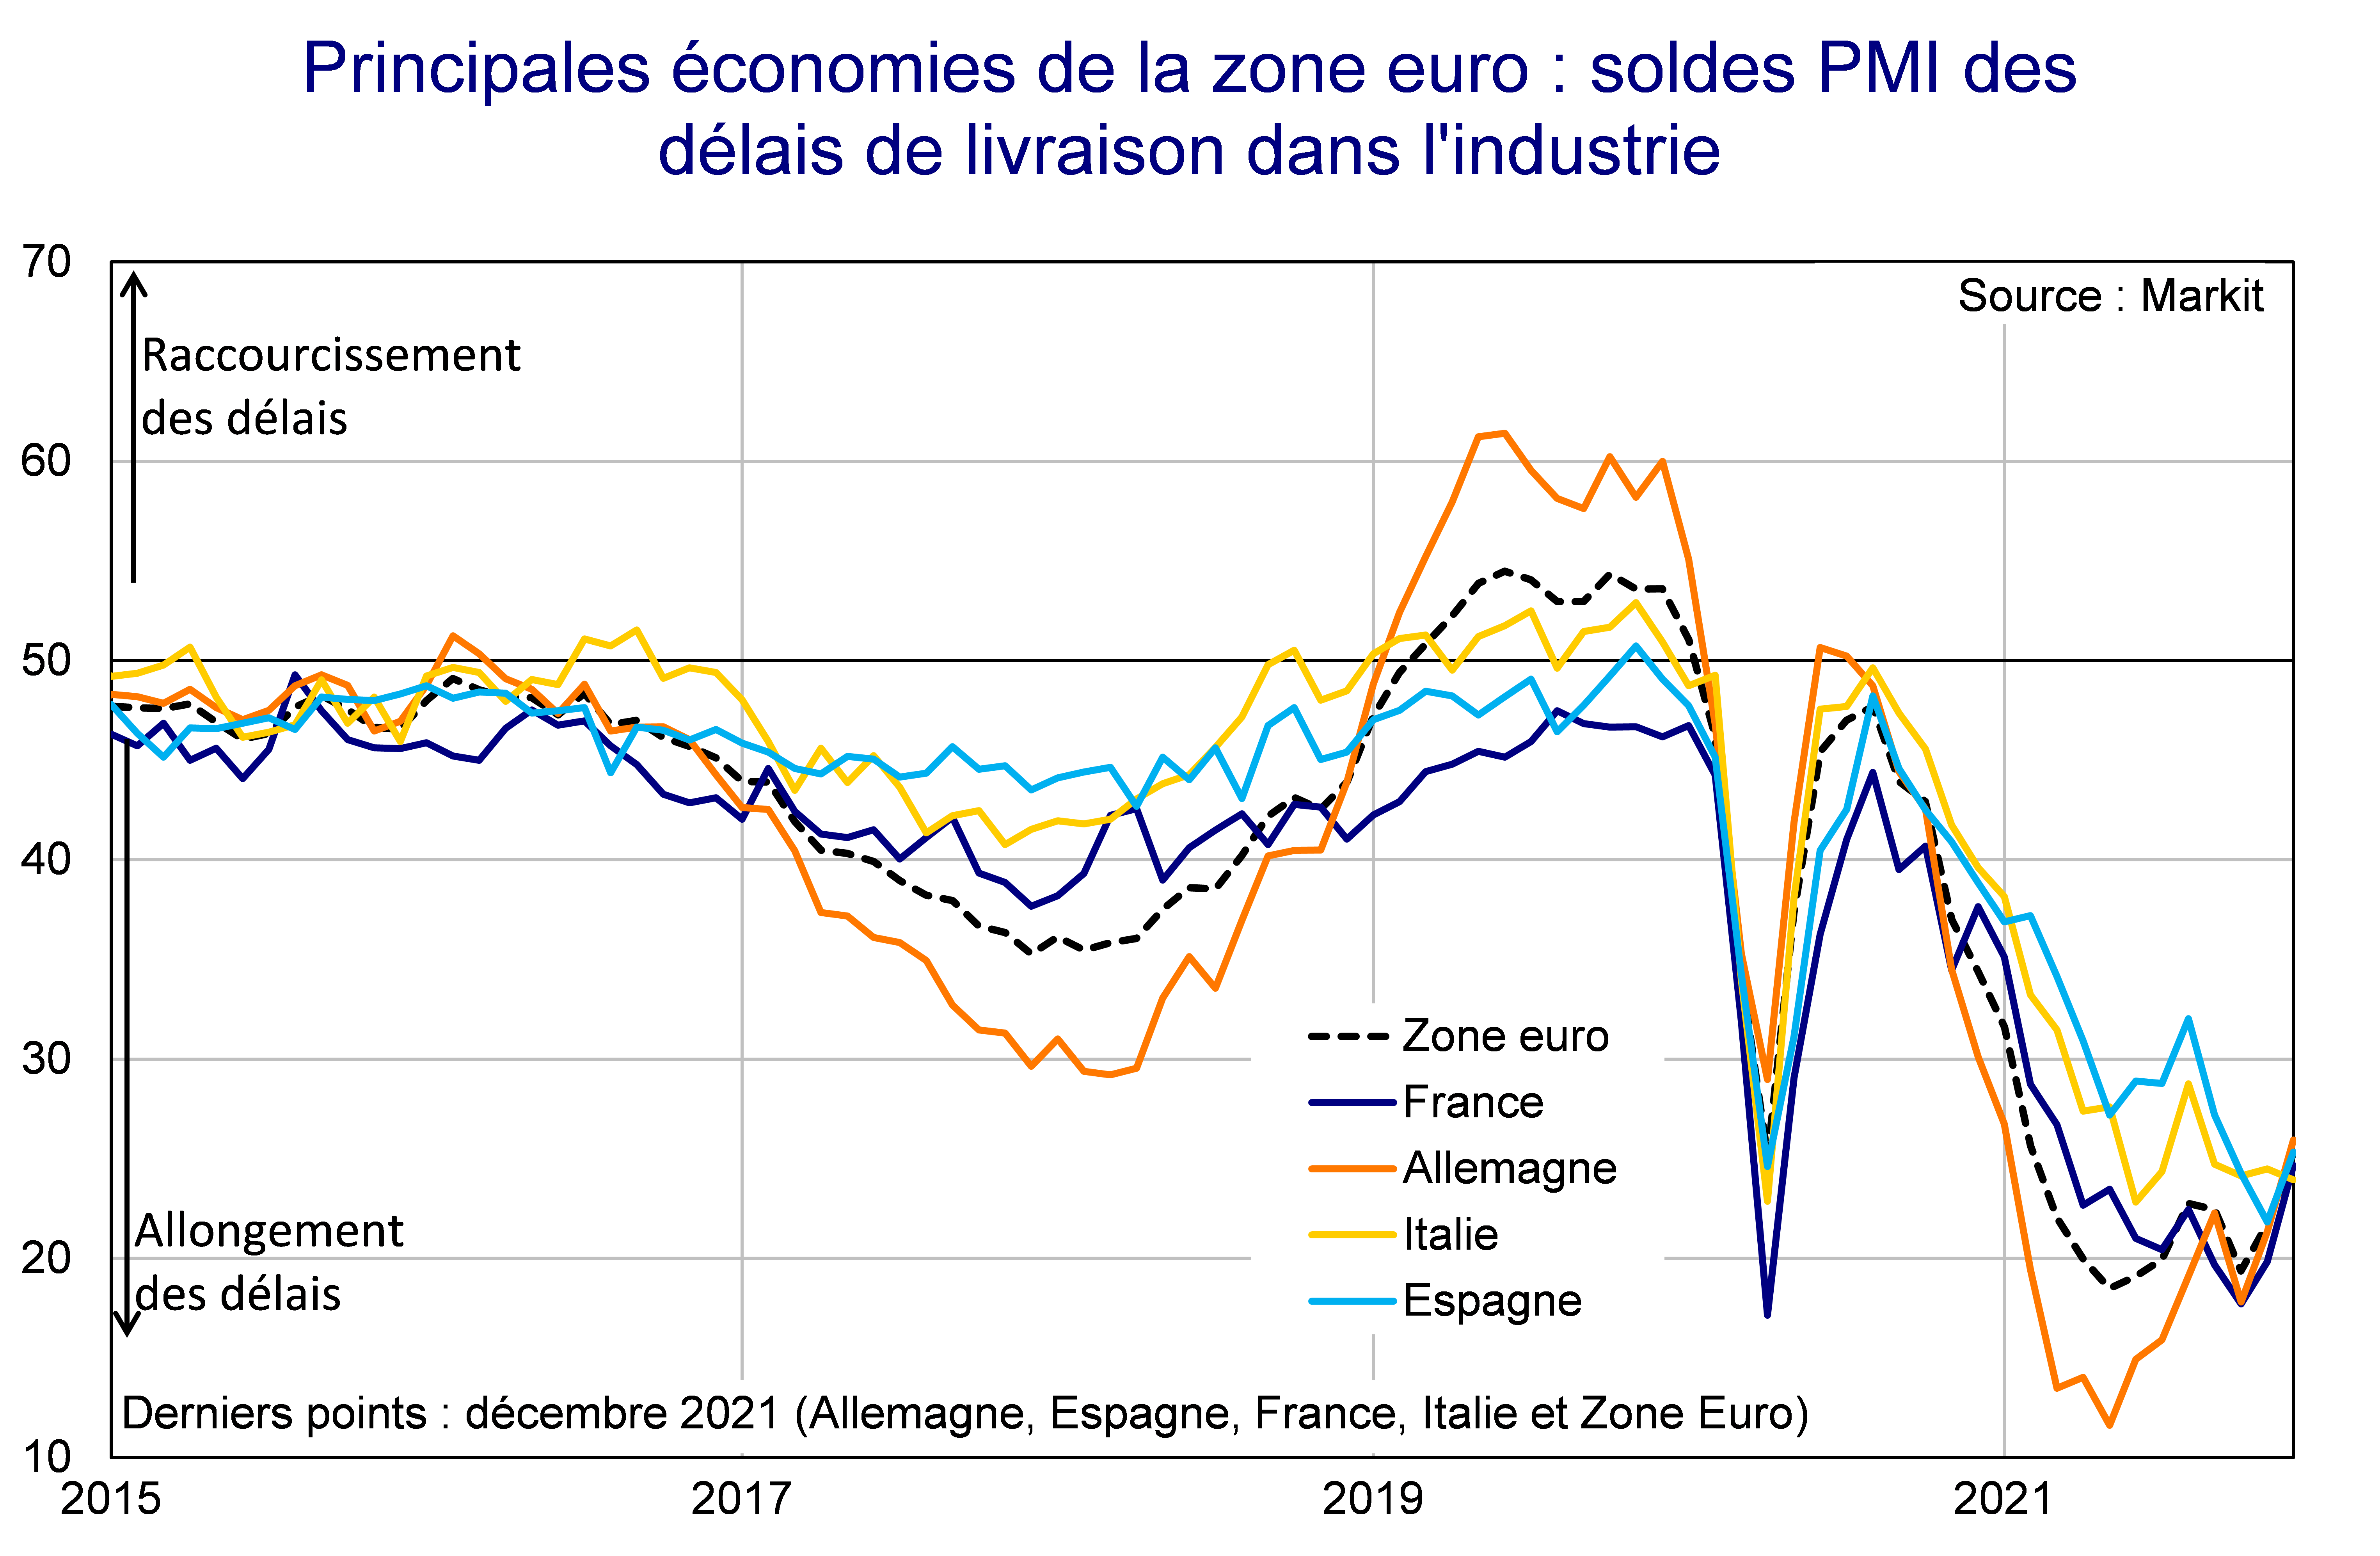 Principales économies de la zone euro Soldes PMI des délais de livraison dans l'industrie